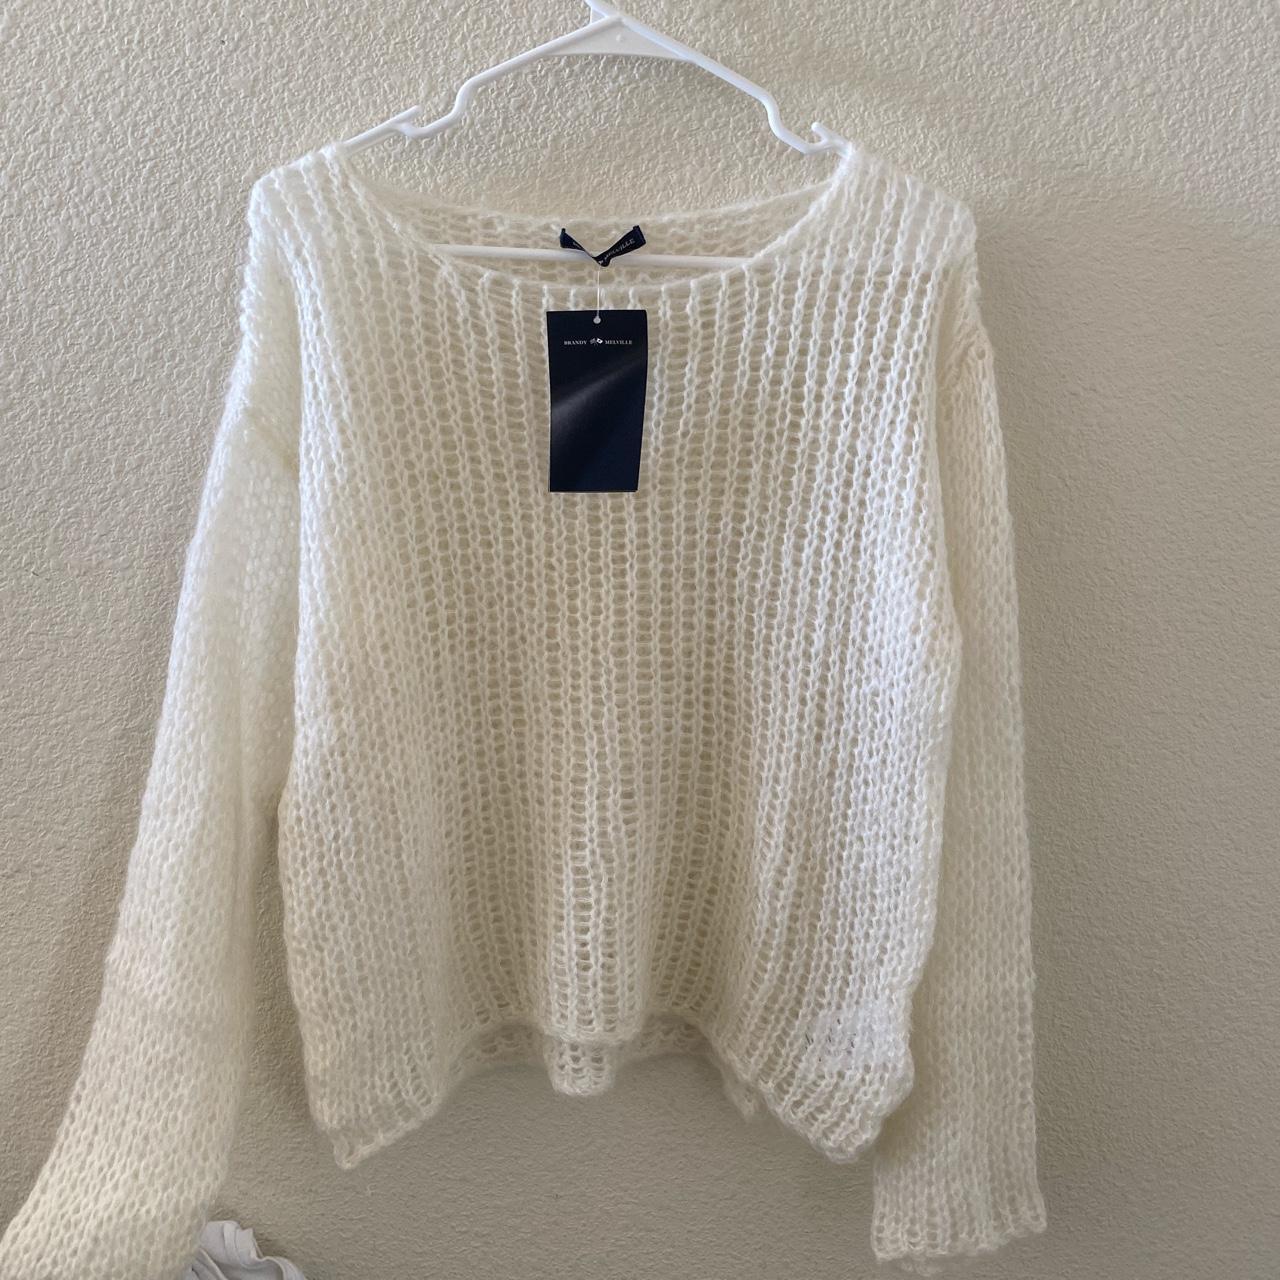 Brandy melville light weight Colette sweater - Depop